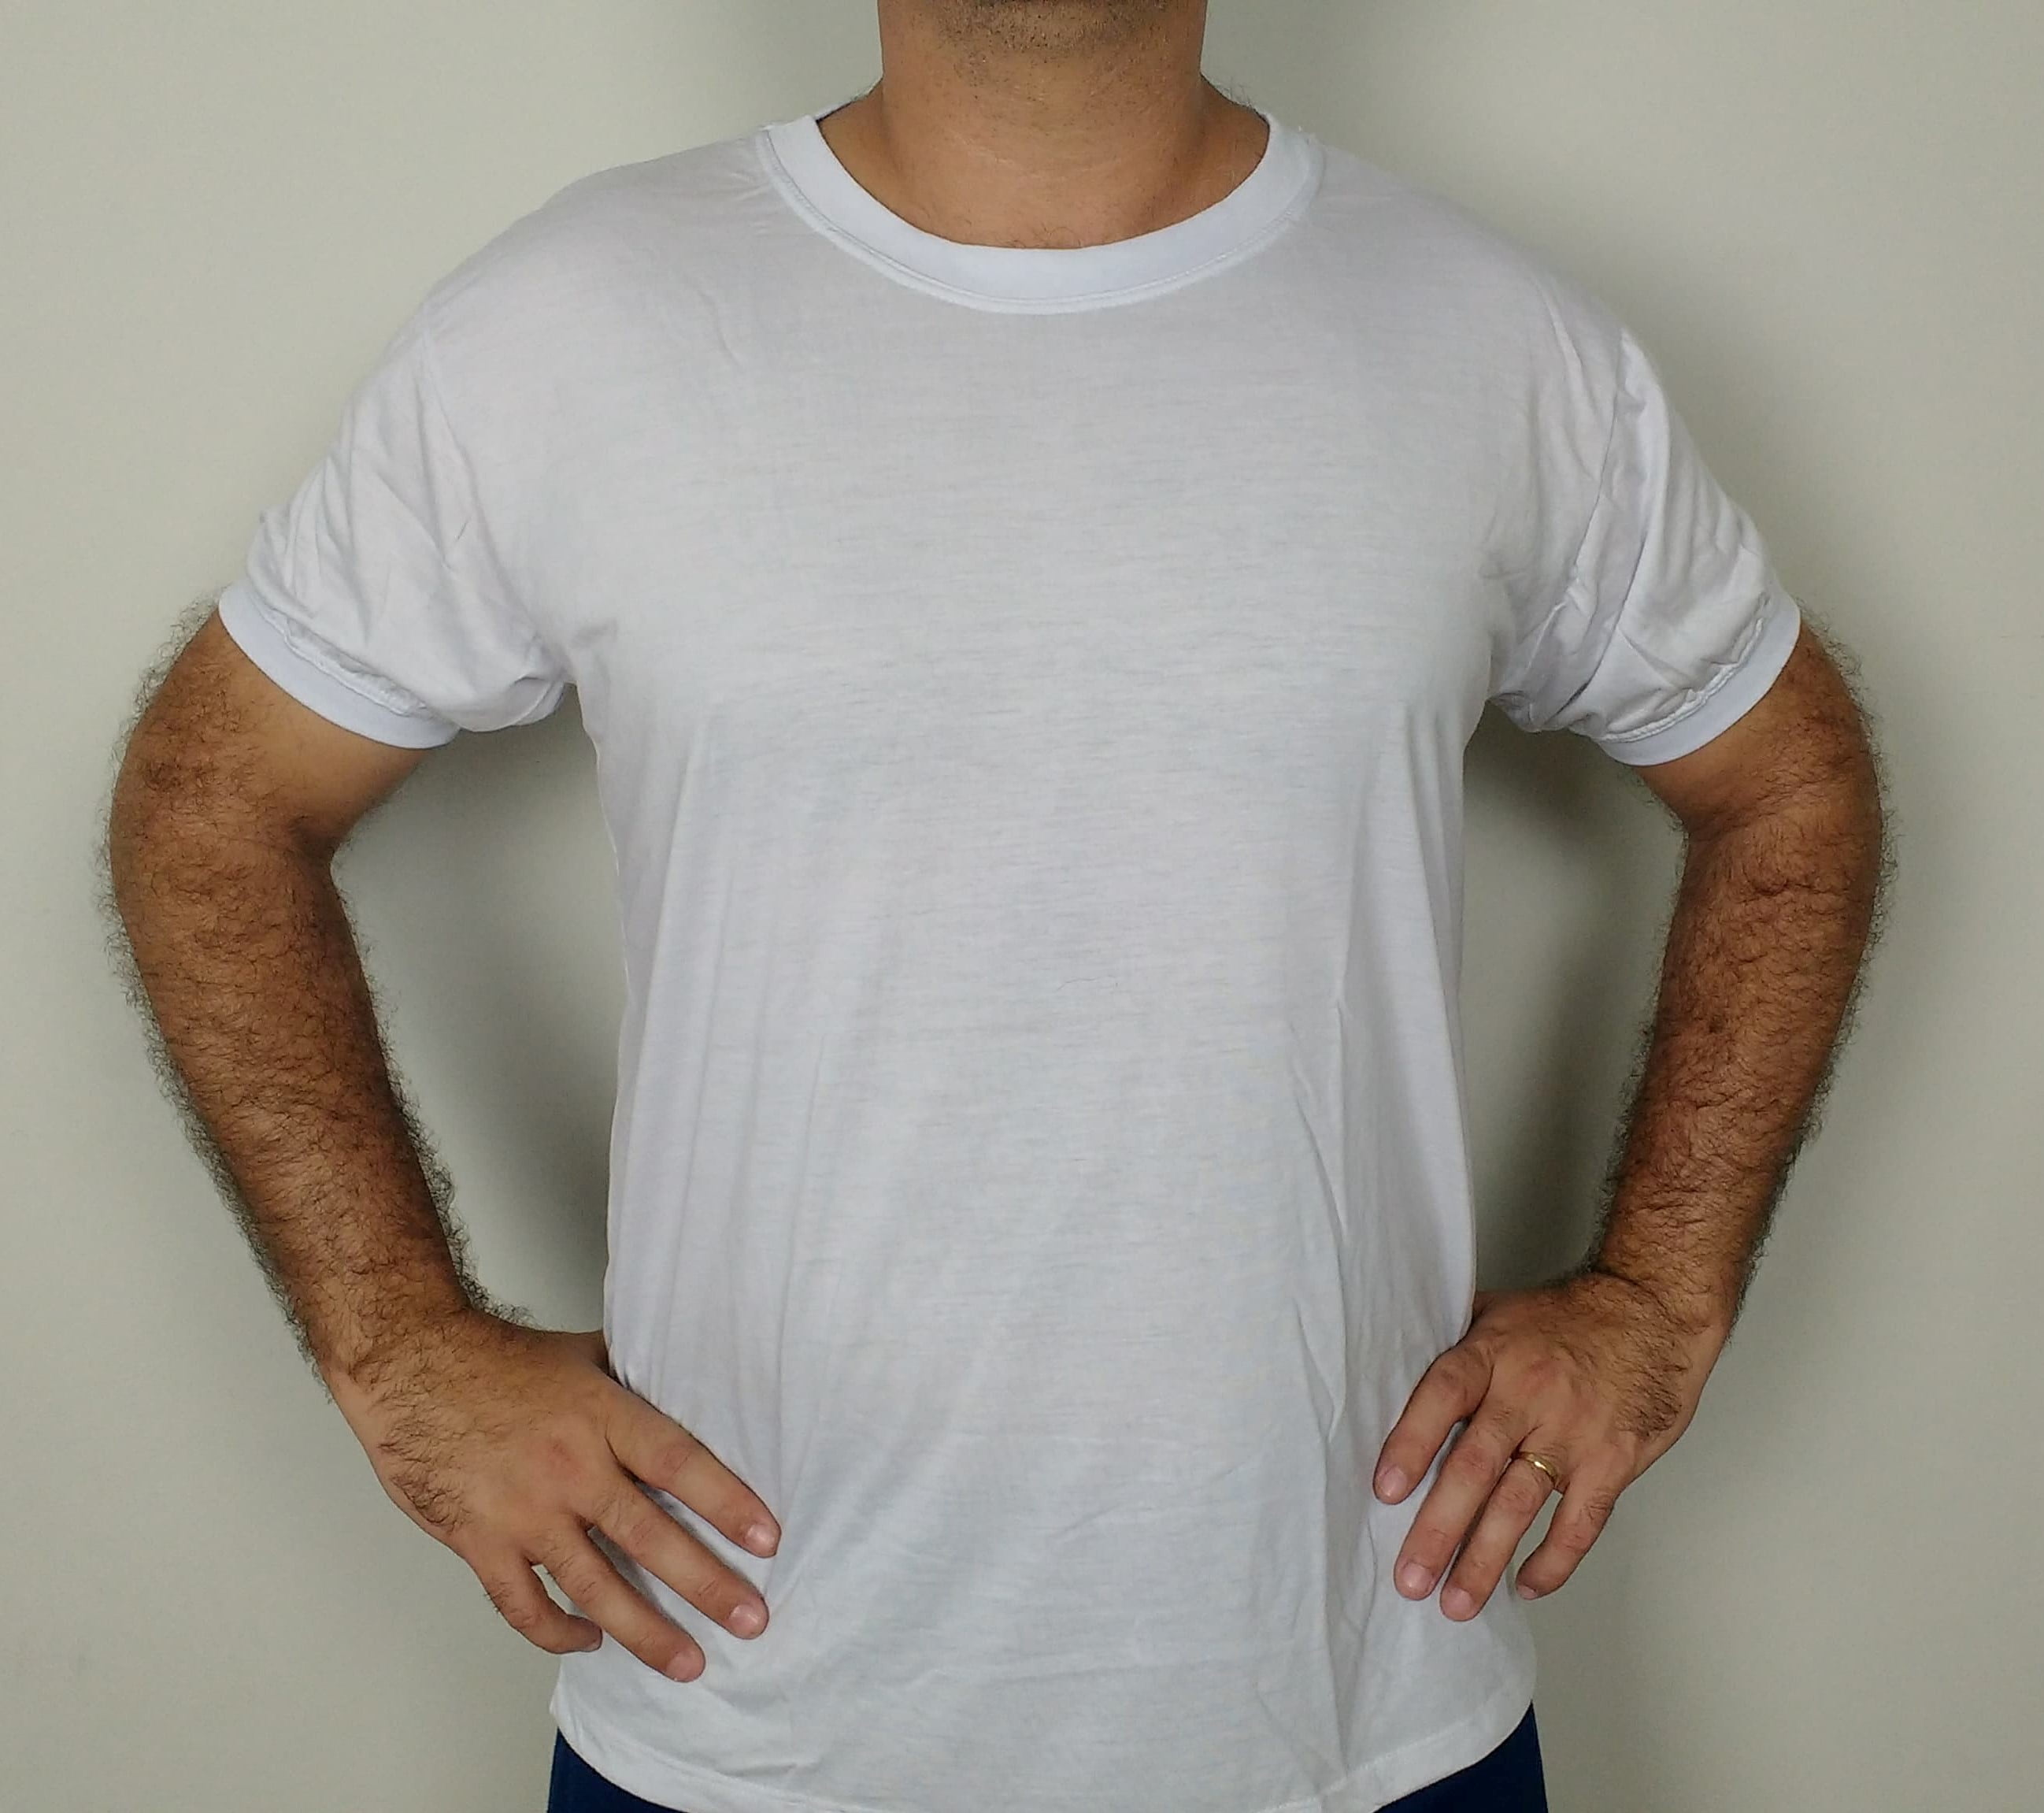 Camiseta branca, gola redonda, manga curta